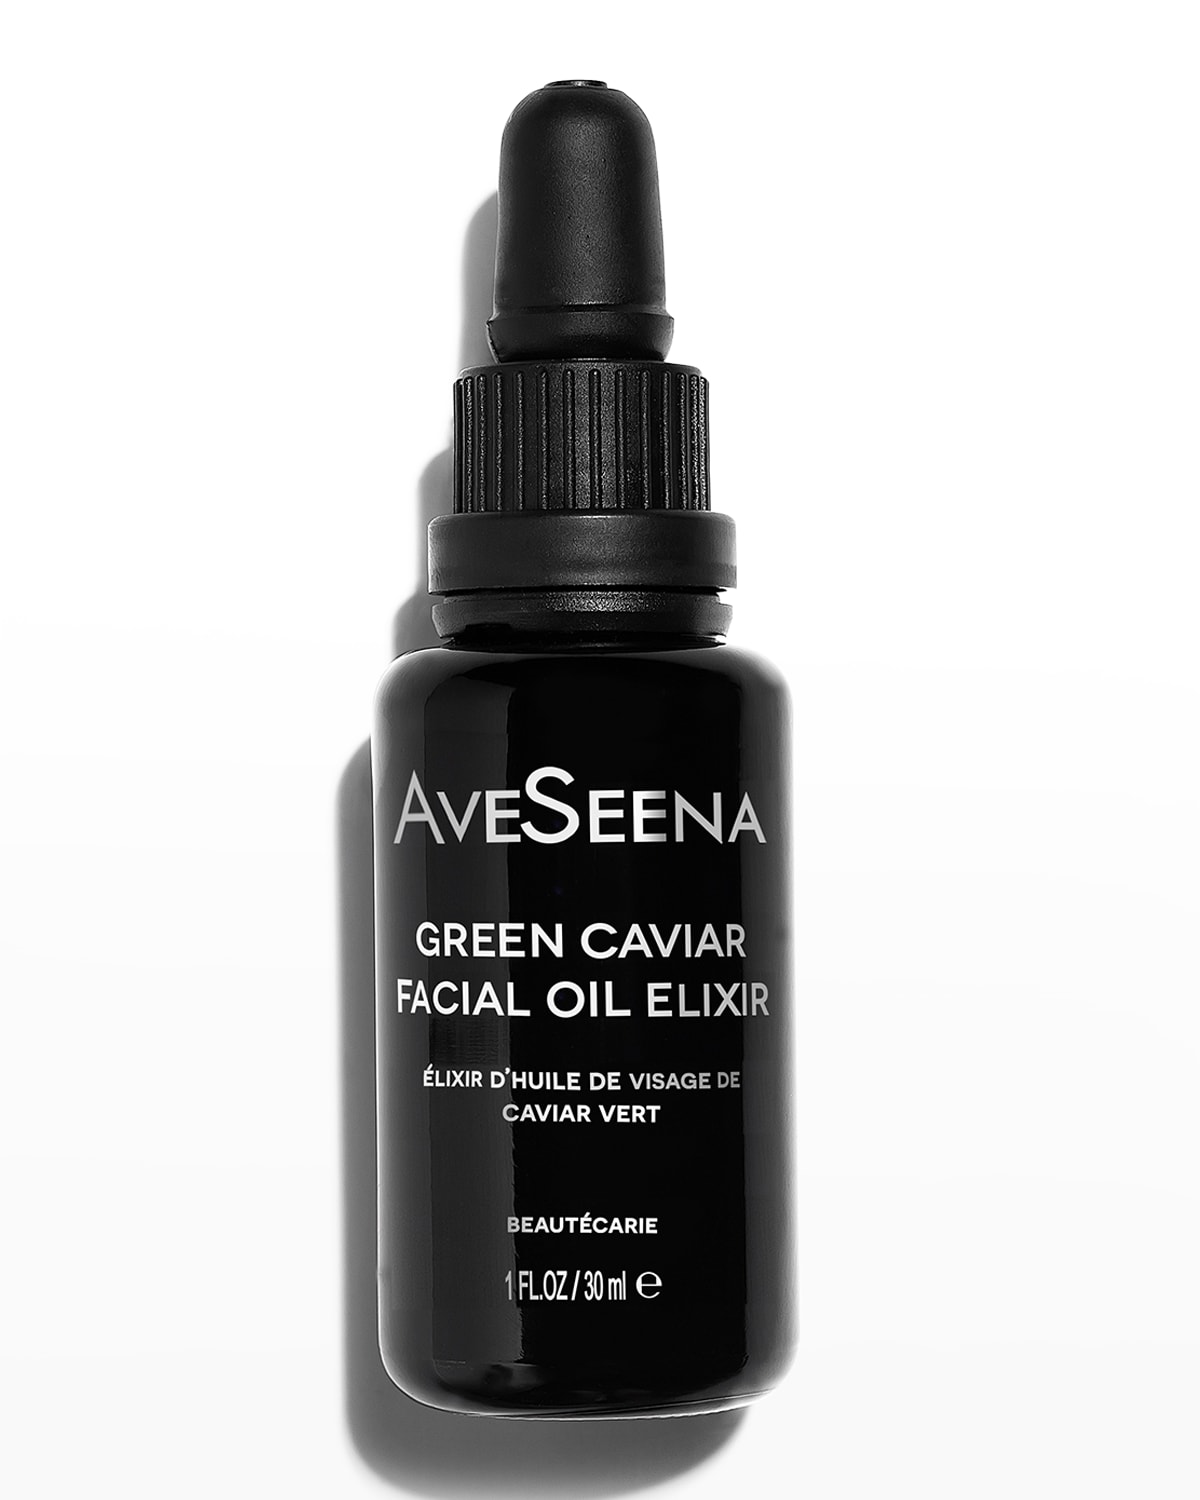 AveSeena 1 oz. Green Caviar Facial Oil Elixir